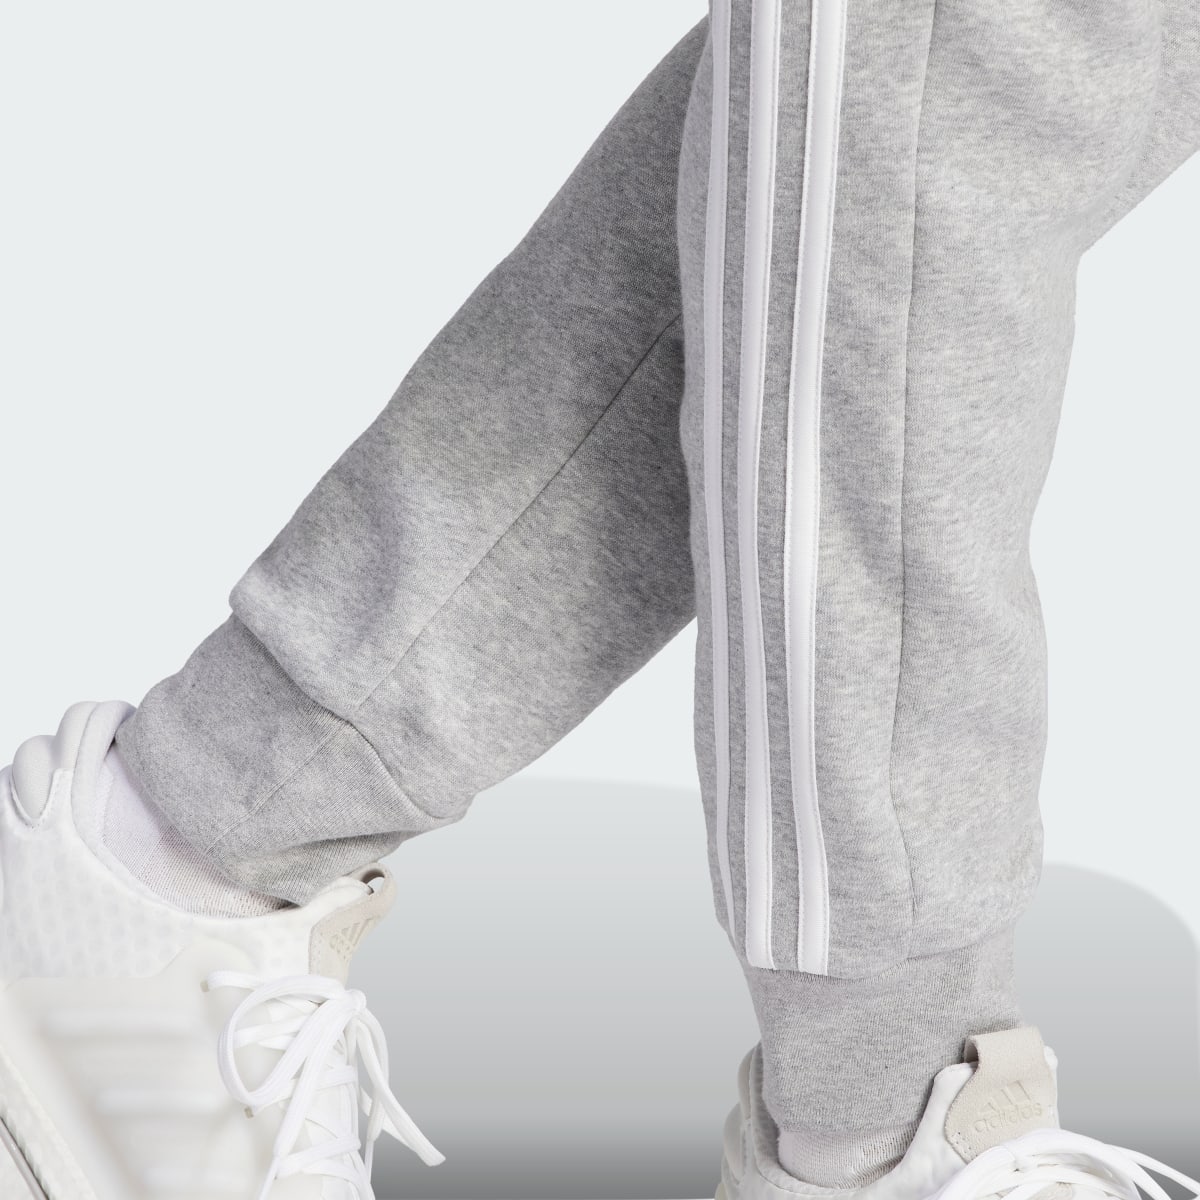 Adidas Essentials 3-Streifen Tapered Cuff Hose. 6